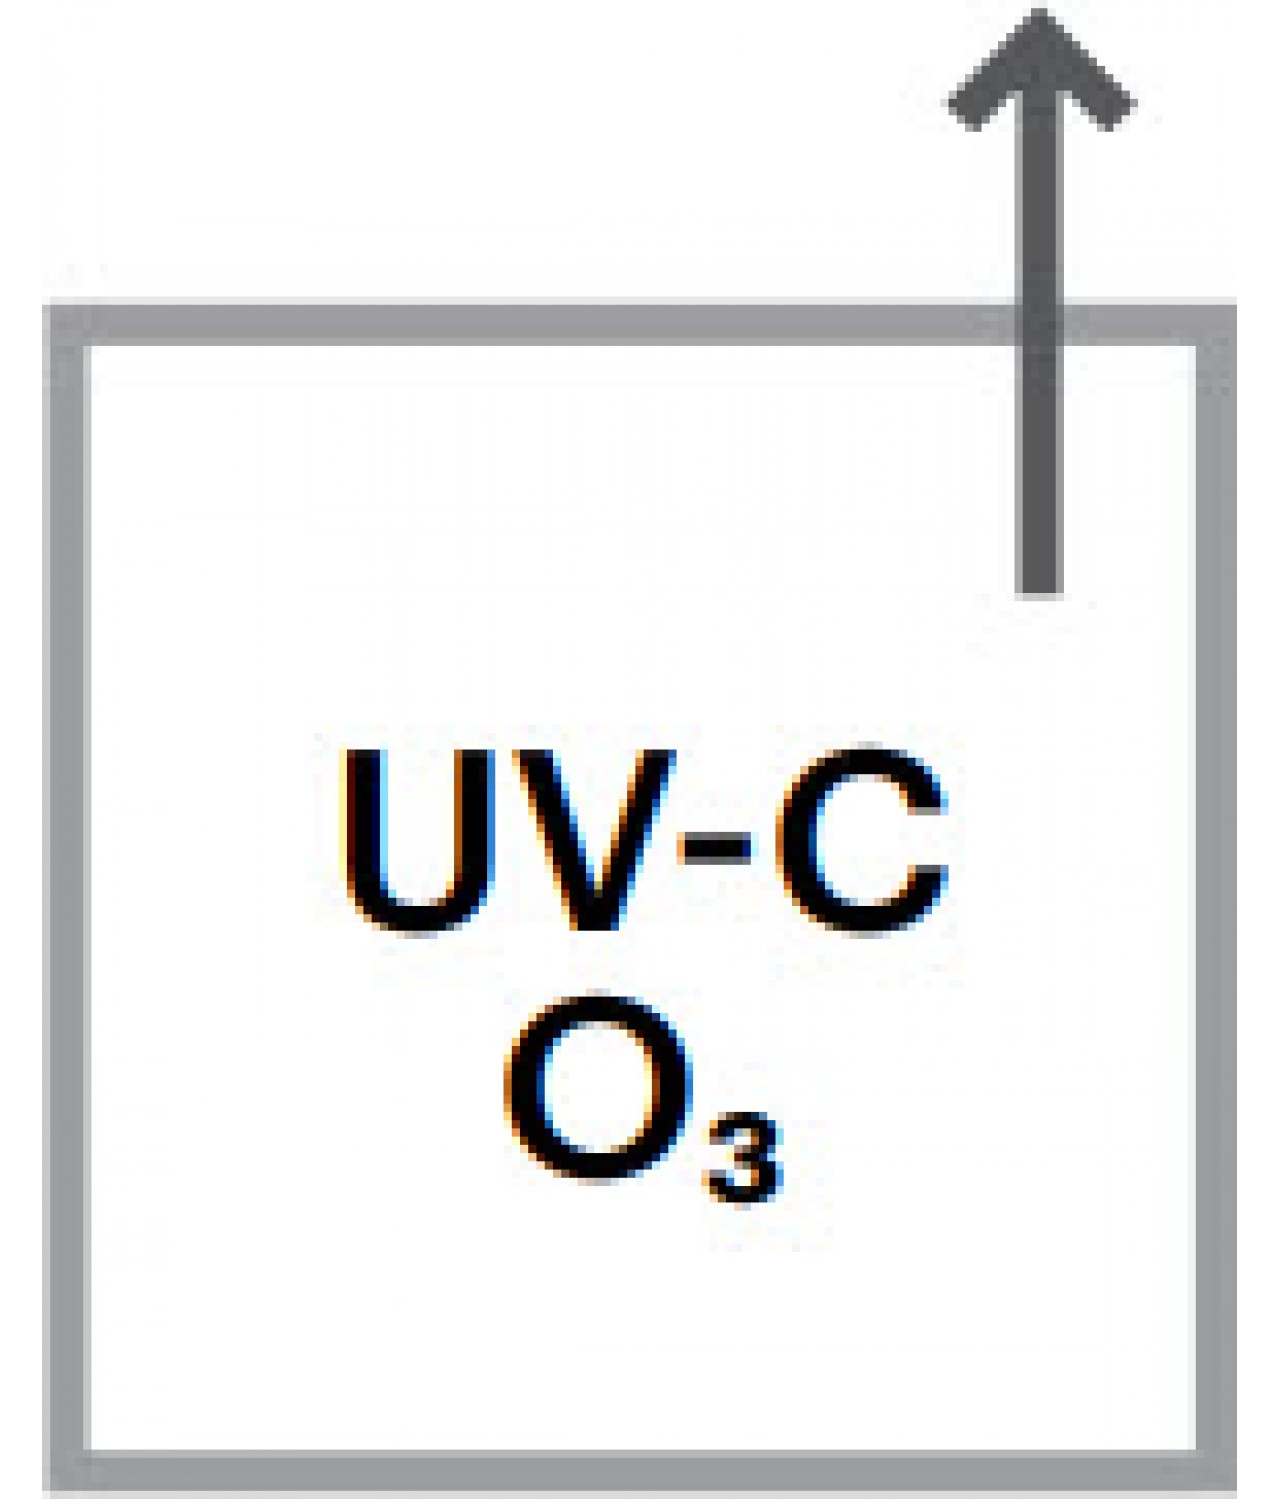 CEA mini - UV ozone, exhaust